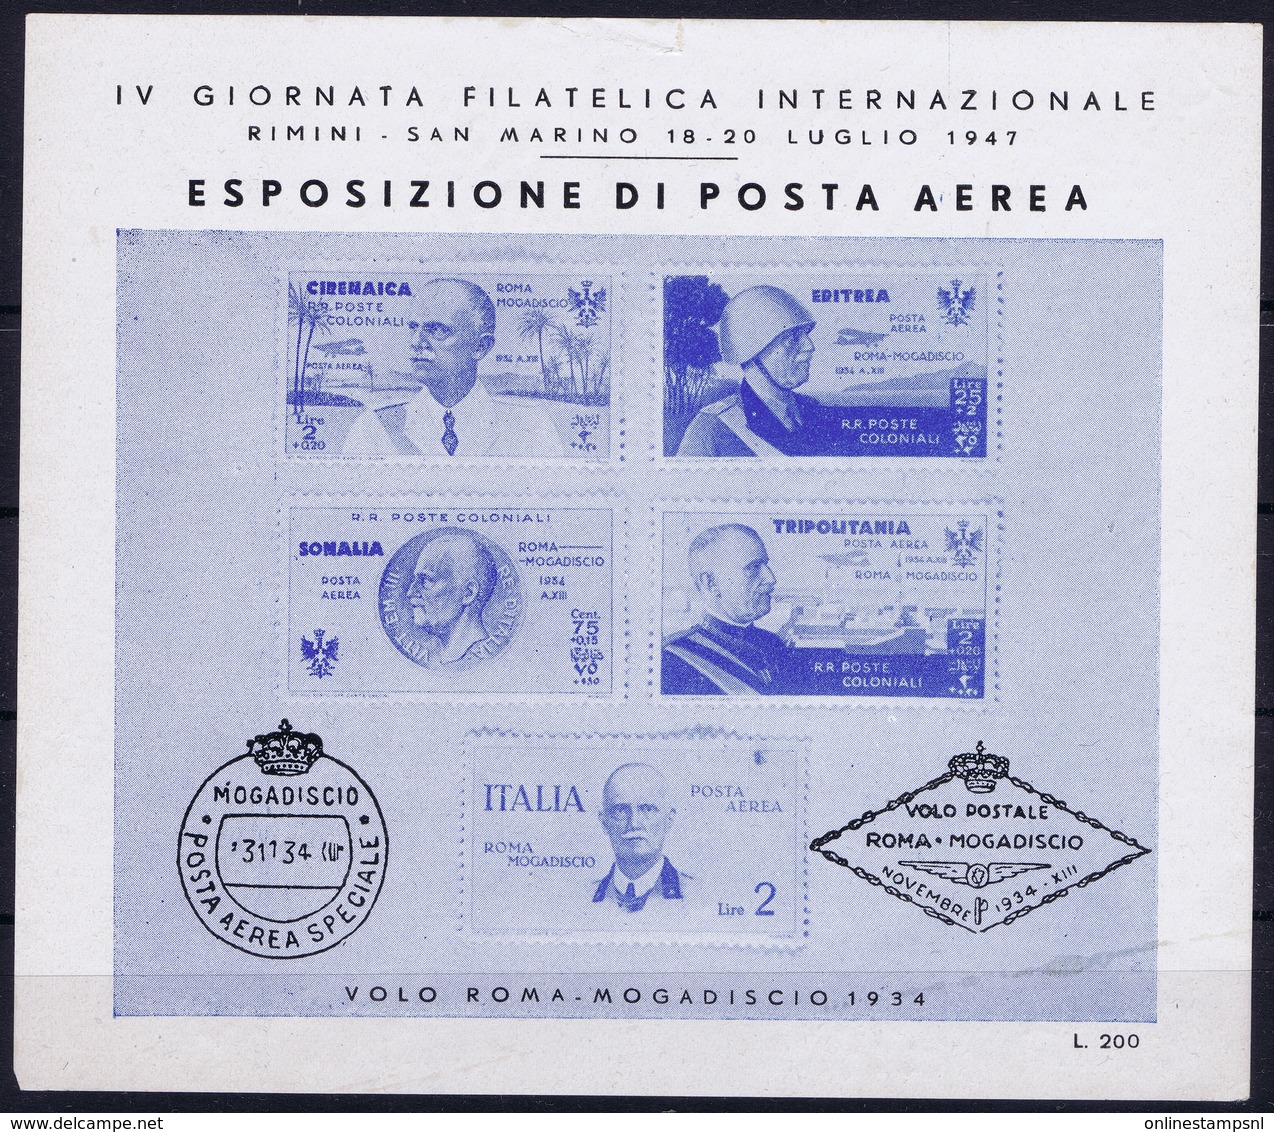 ITALY  ESPOSIZIONE DI POSTA AEREA   IV GIORNATA FILATELICA  VOLO ROMA - MOGADISCIO 1934   RIMINI S. MARINO 1947 - Luchtpost